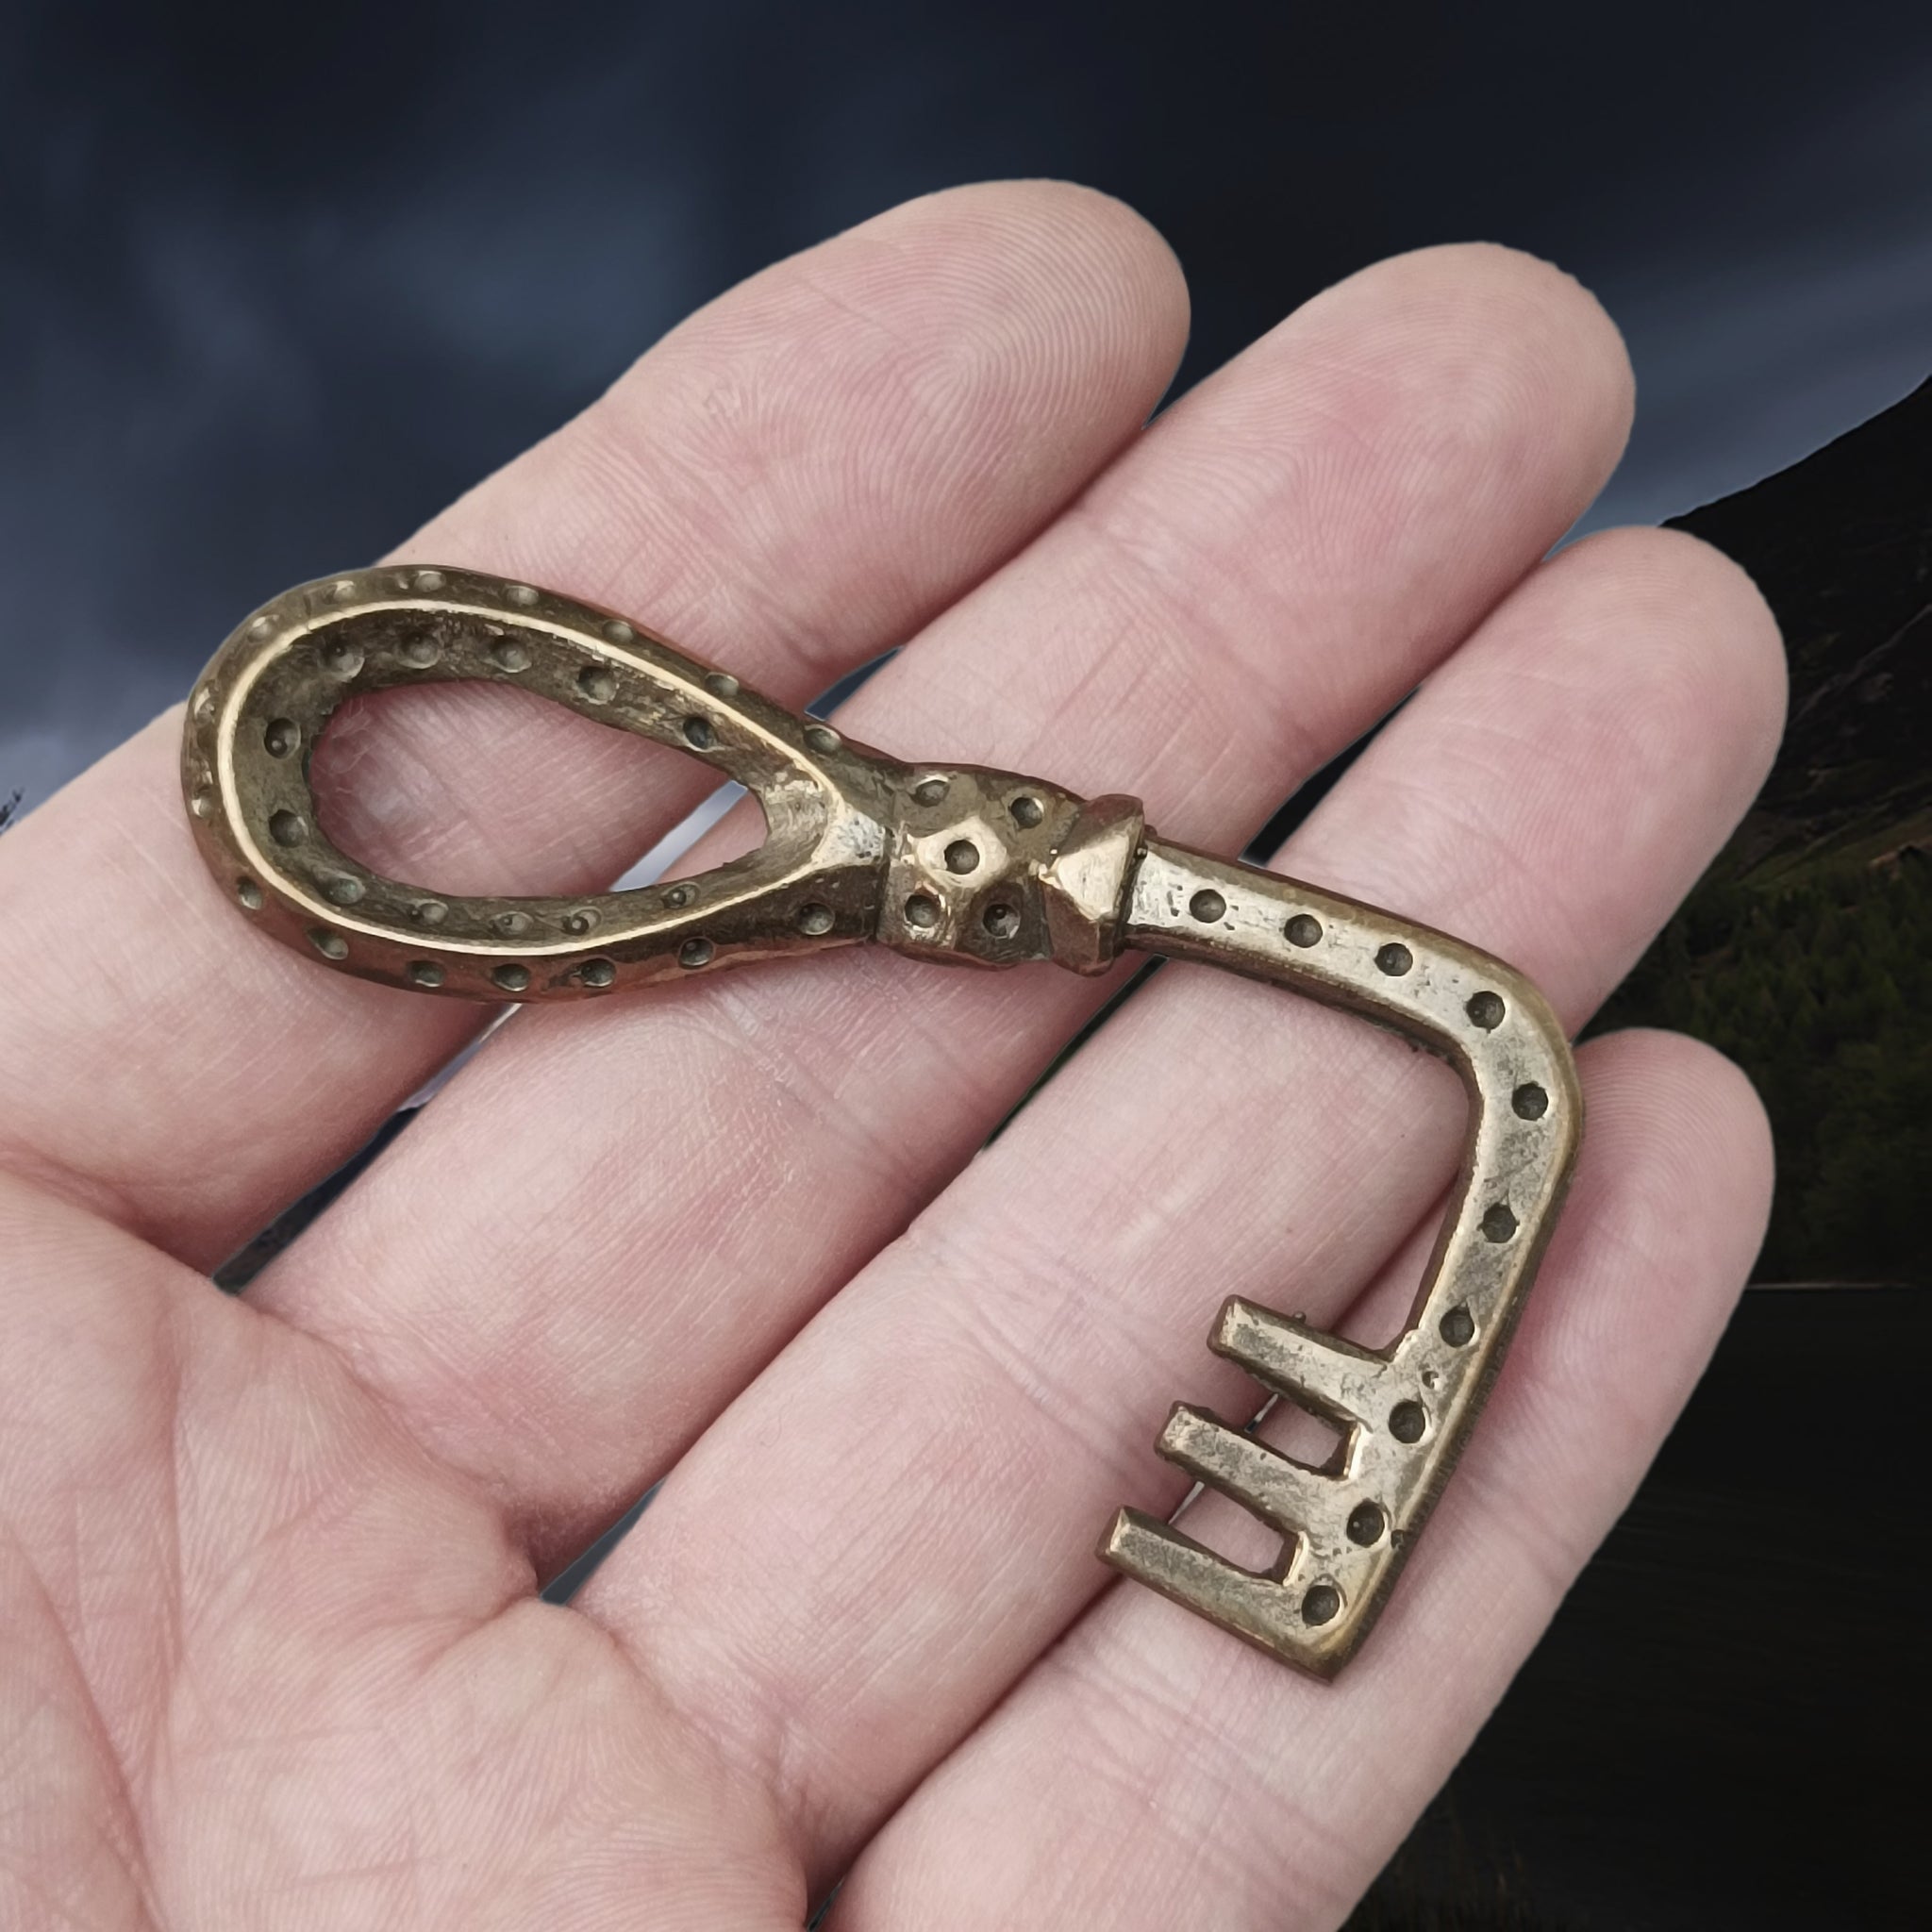 Large Bronze Viking Casket Key on Hand - Other Side